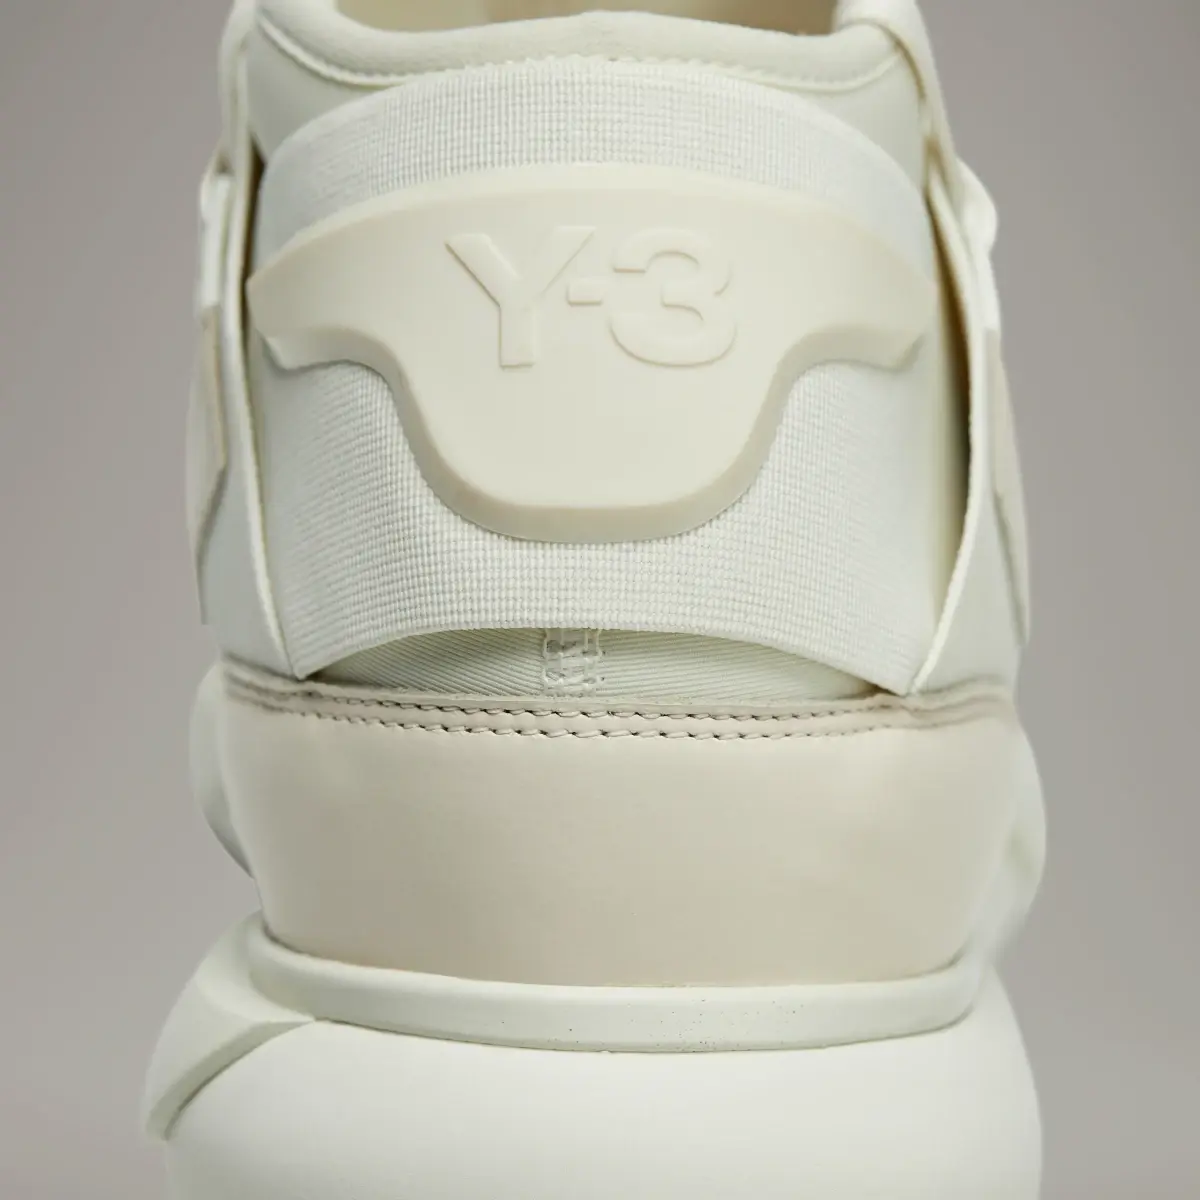 Adidas Y-3 Qasa. 3